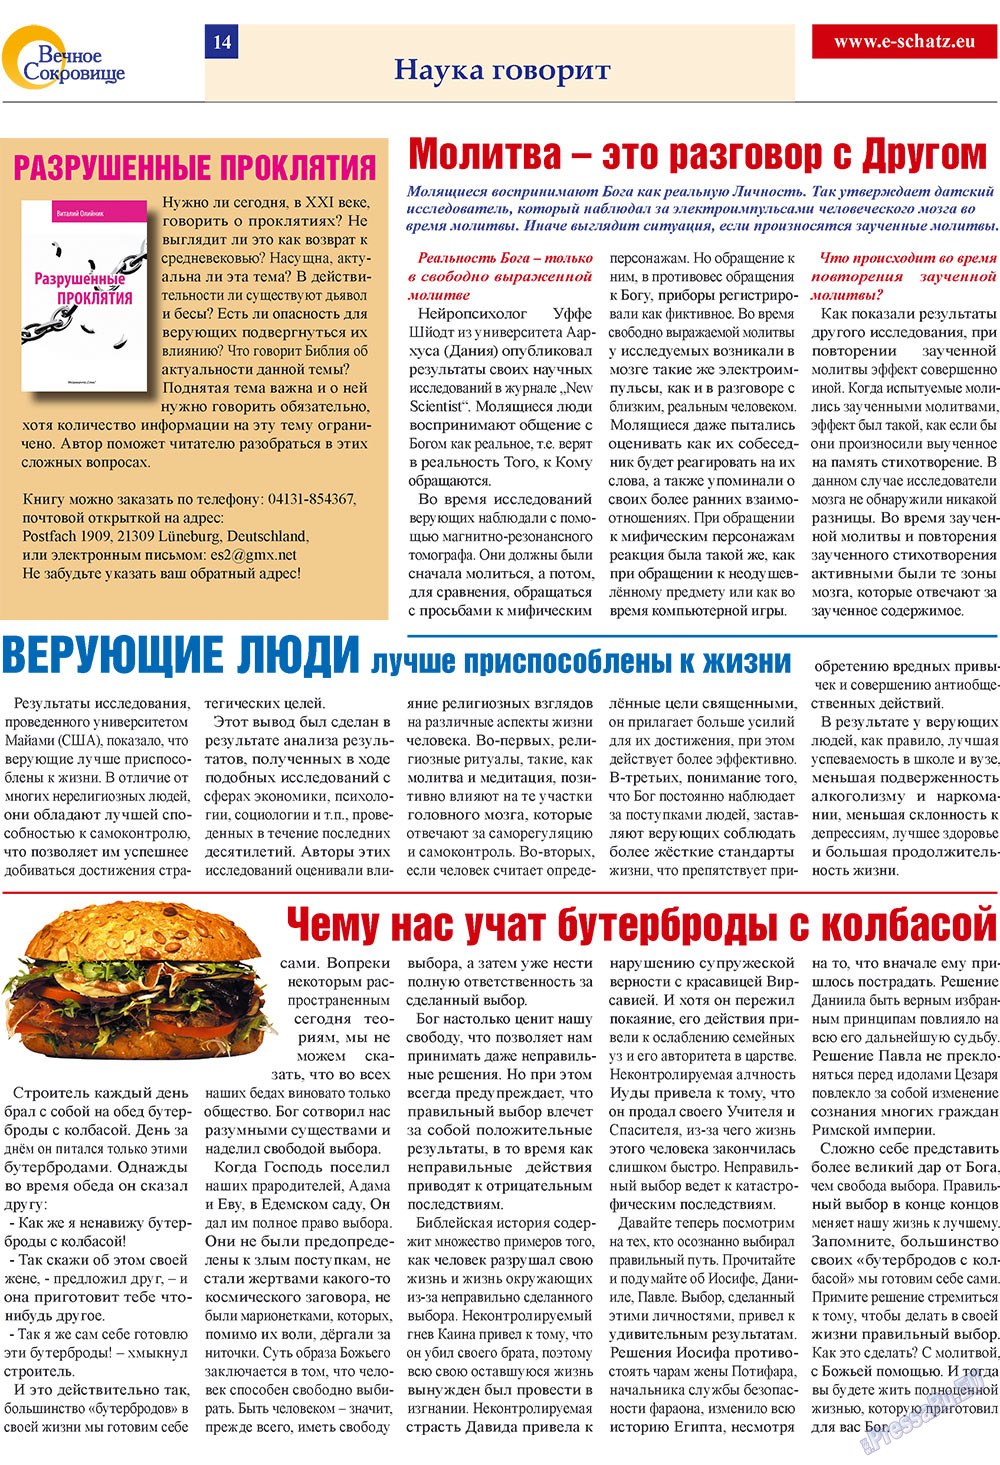 Вечное сокровище (газета). 2009 год, номер 2, стр. 14